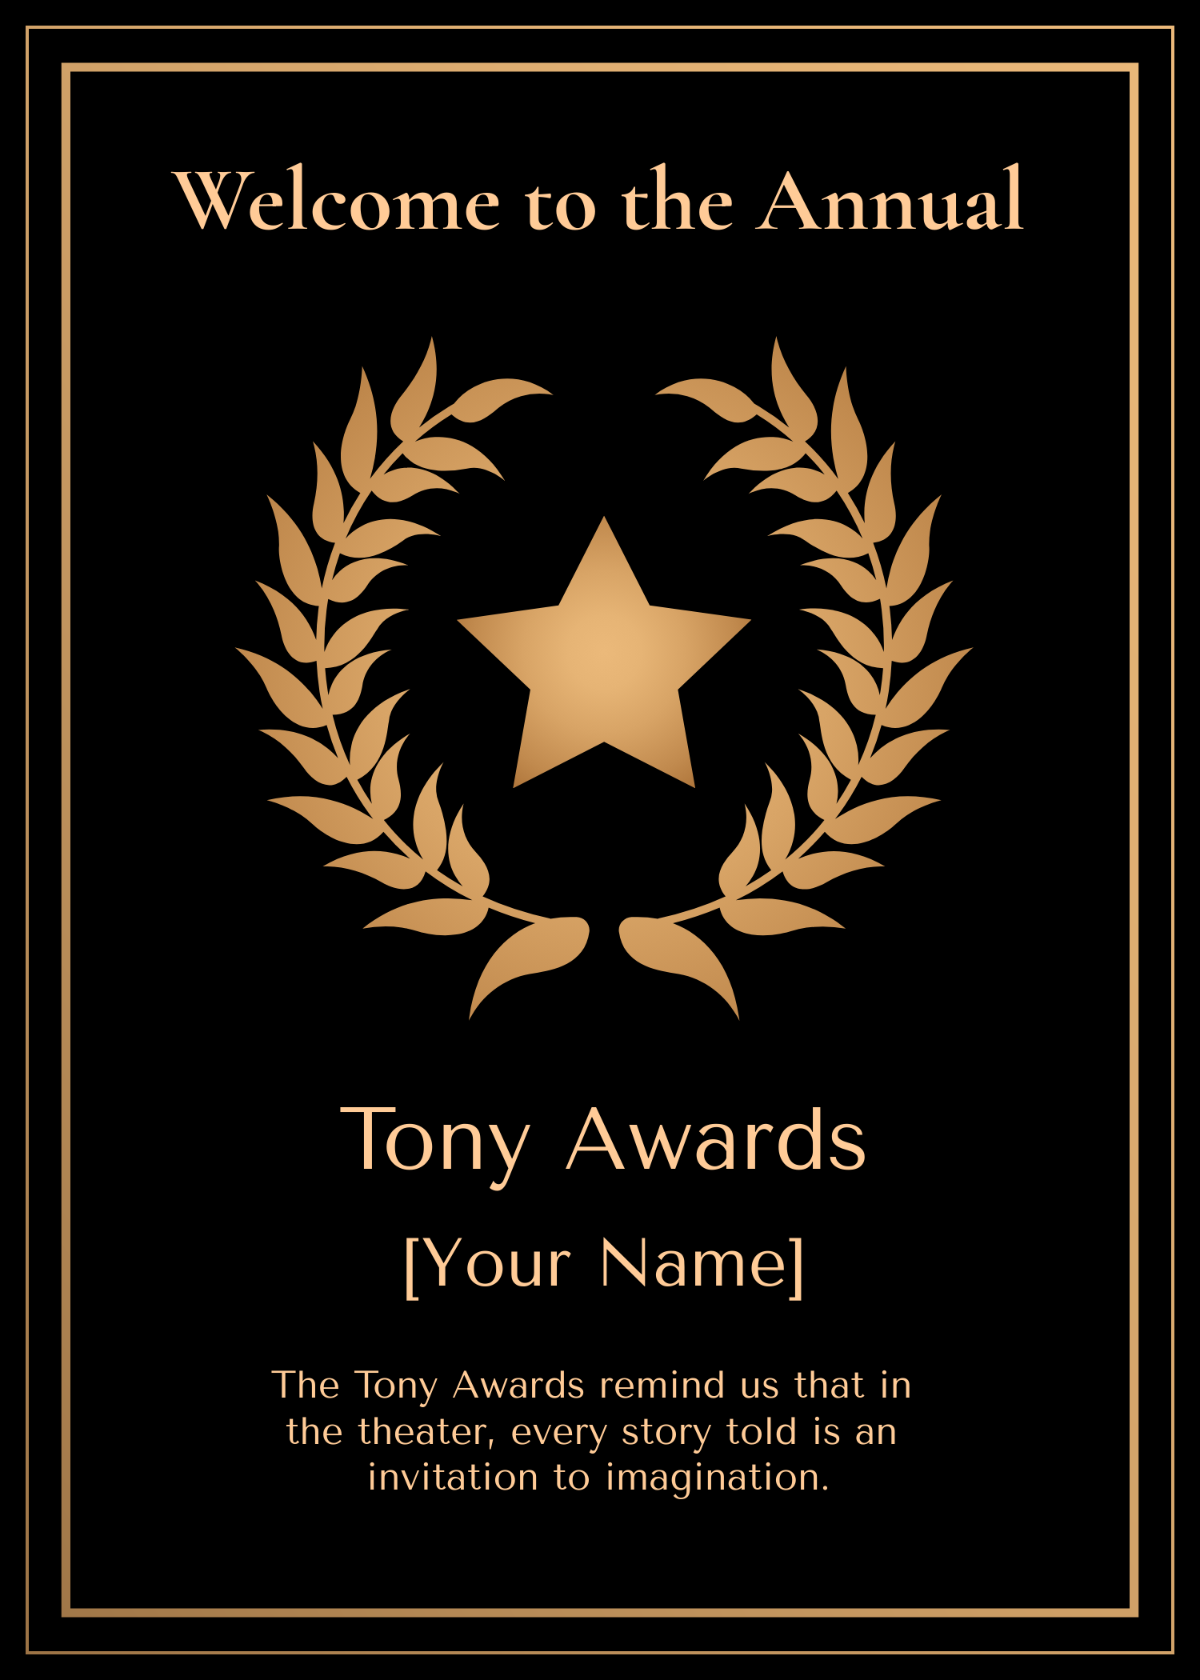 Tony Awards Greeting Card